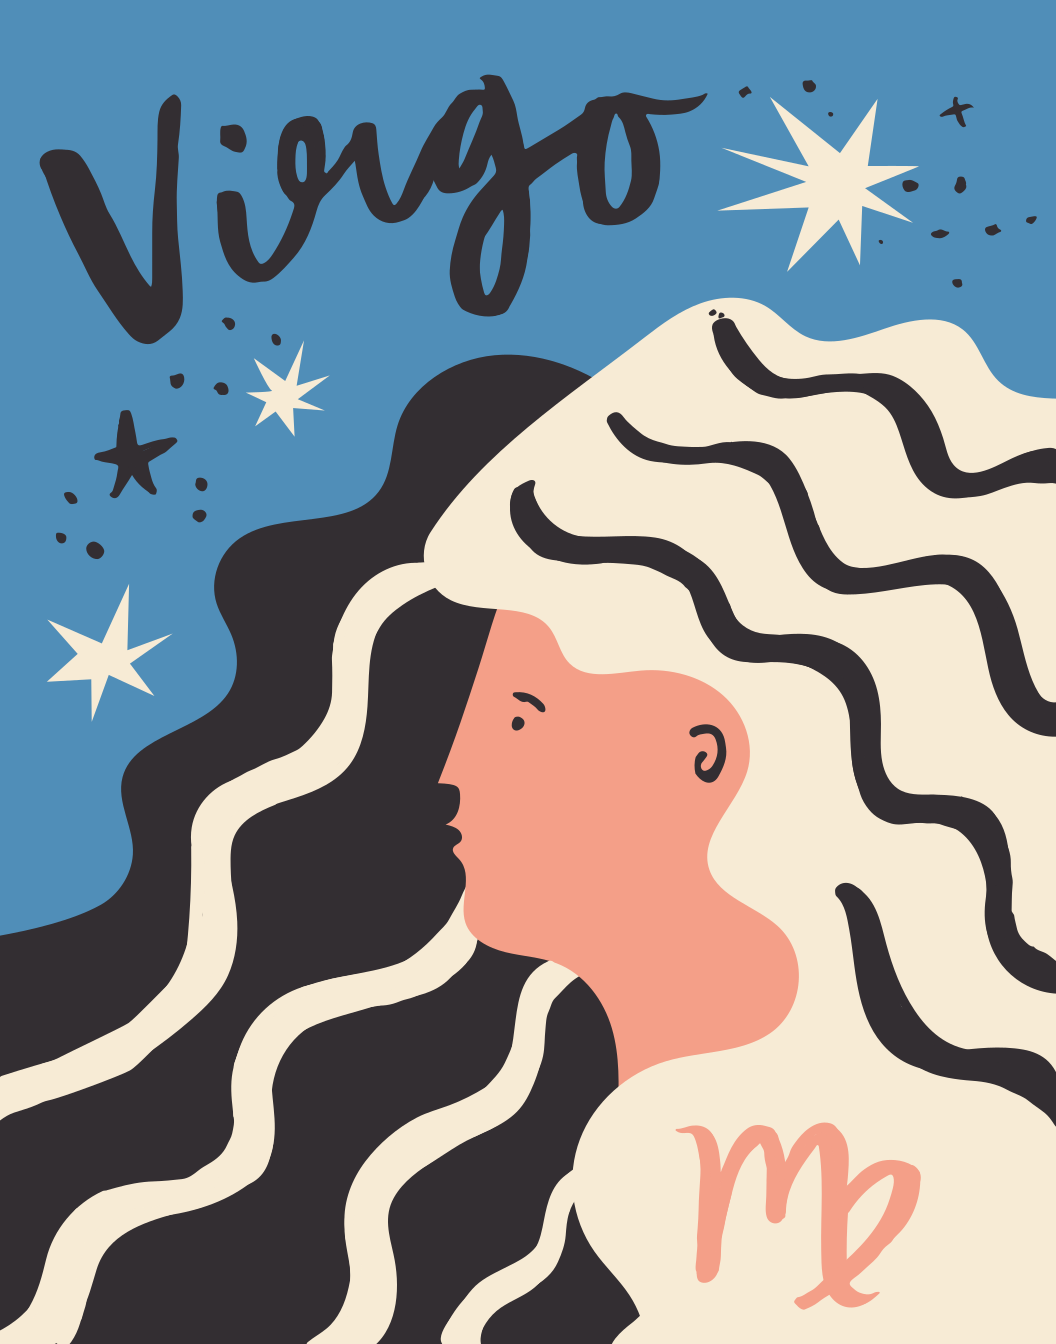 Special Edition Zodiac: Virgo